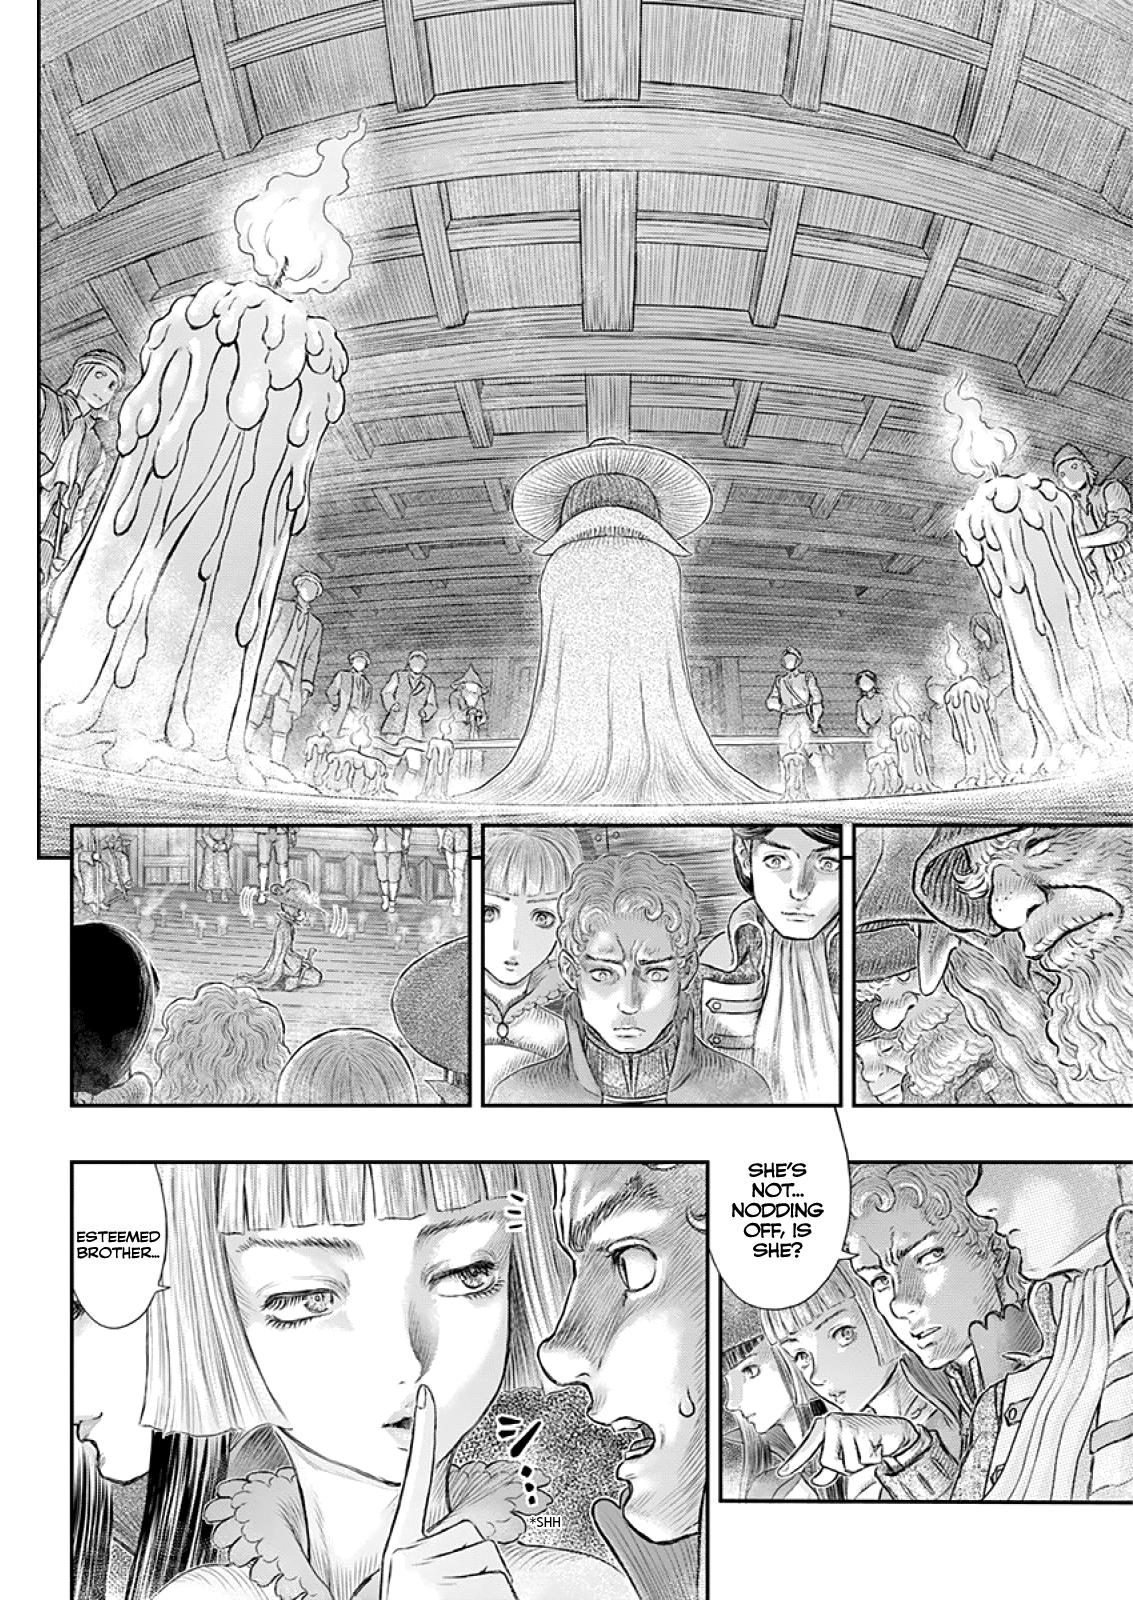 Berserk Manga Chapter 373 image 04